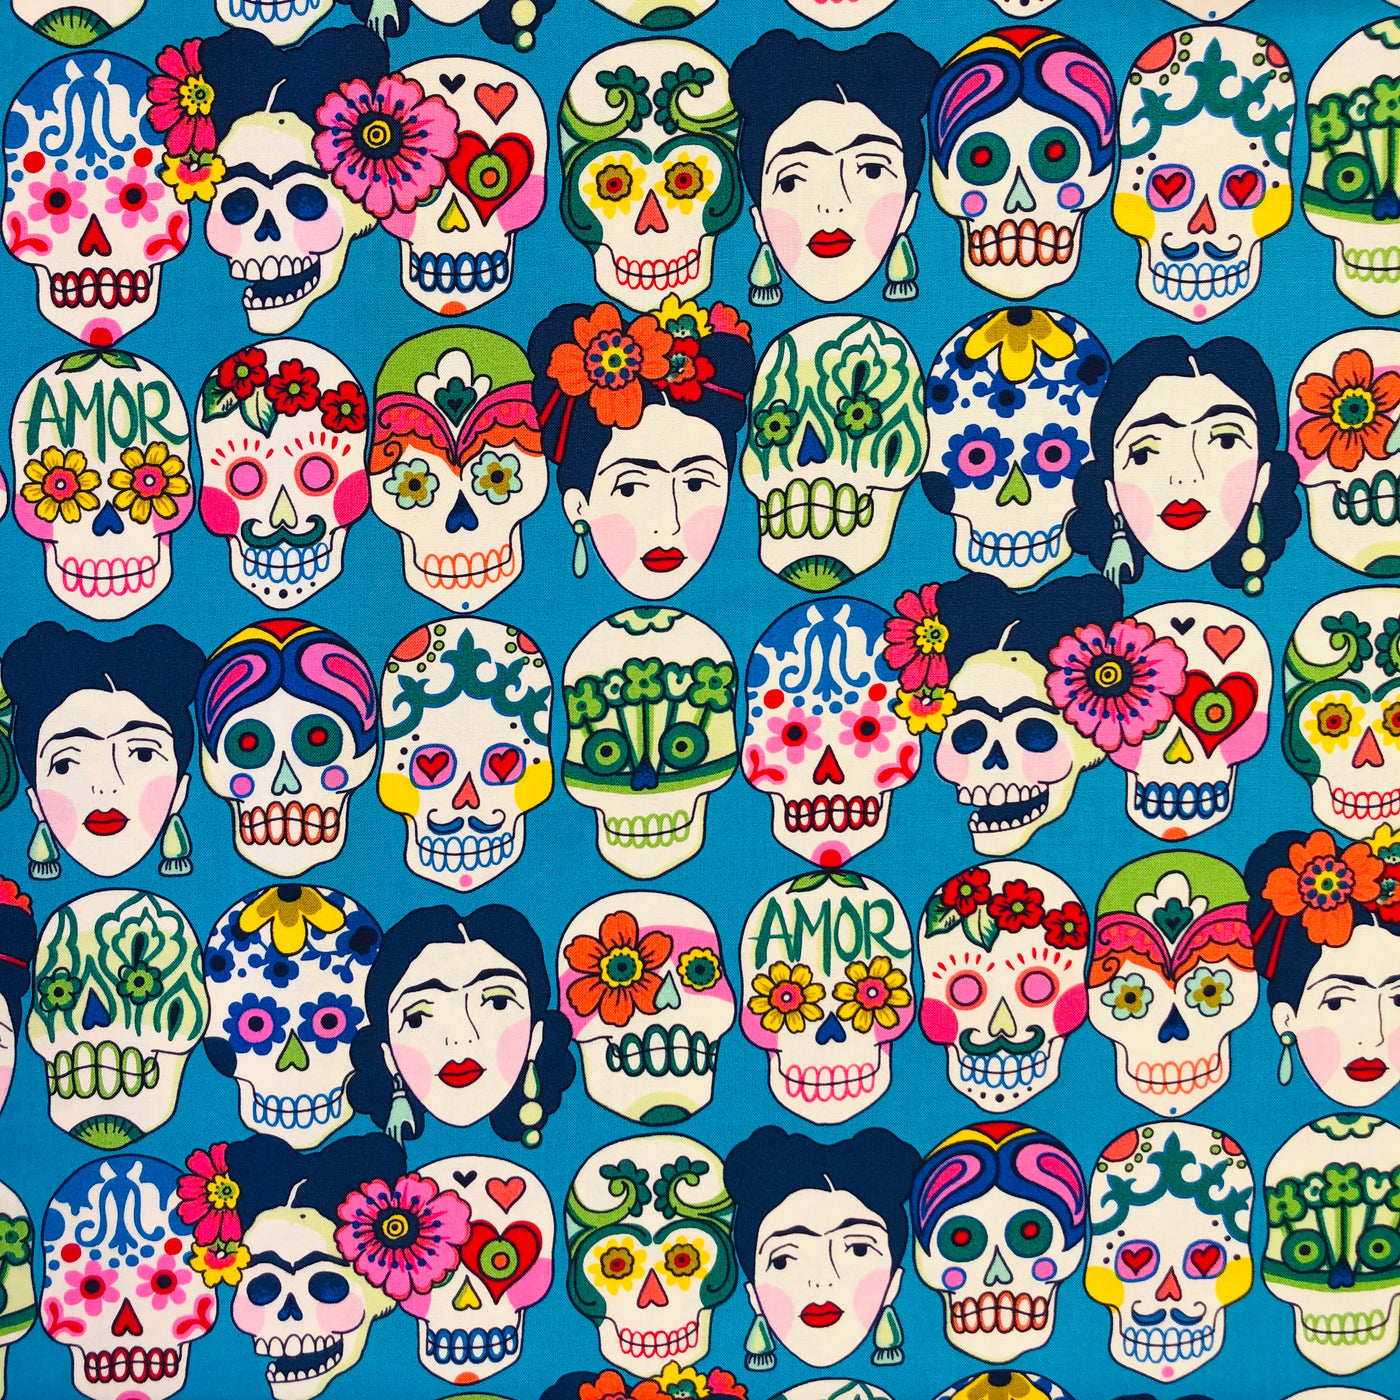 Teal fabric with La Catrina skulls and Frida Kahlo's head